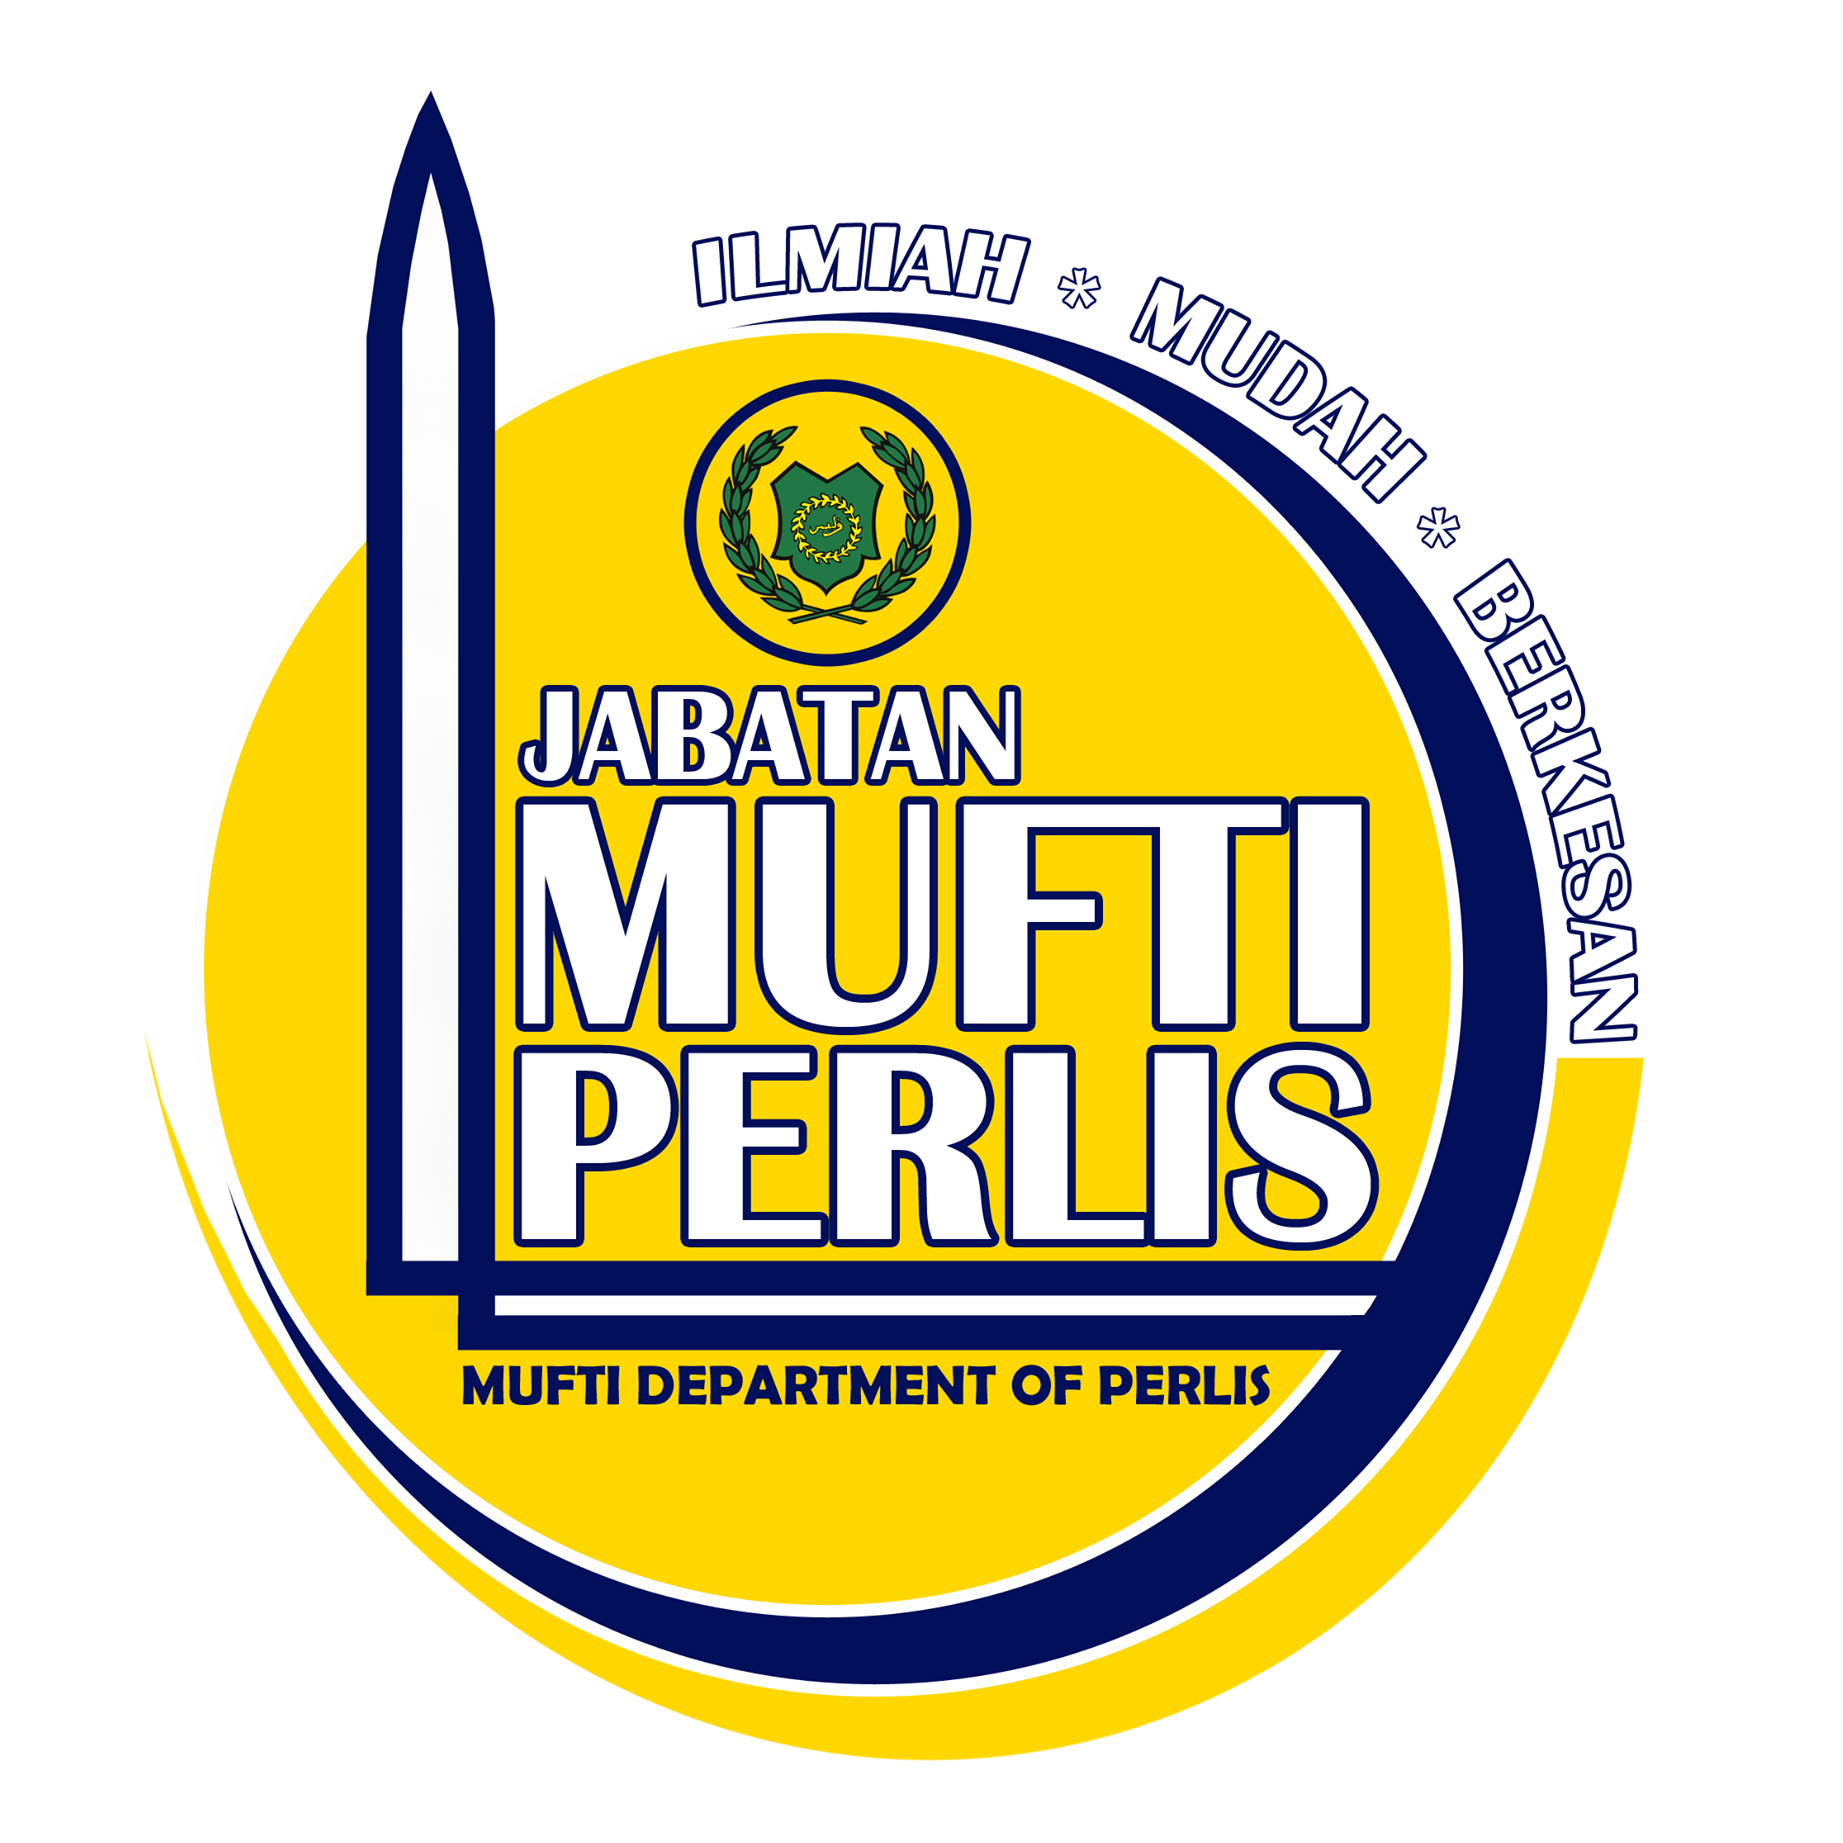 Partnership - Mufti Perlis